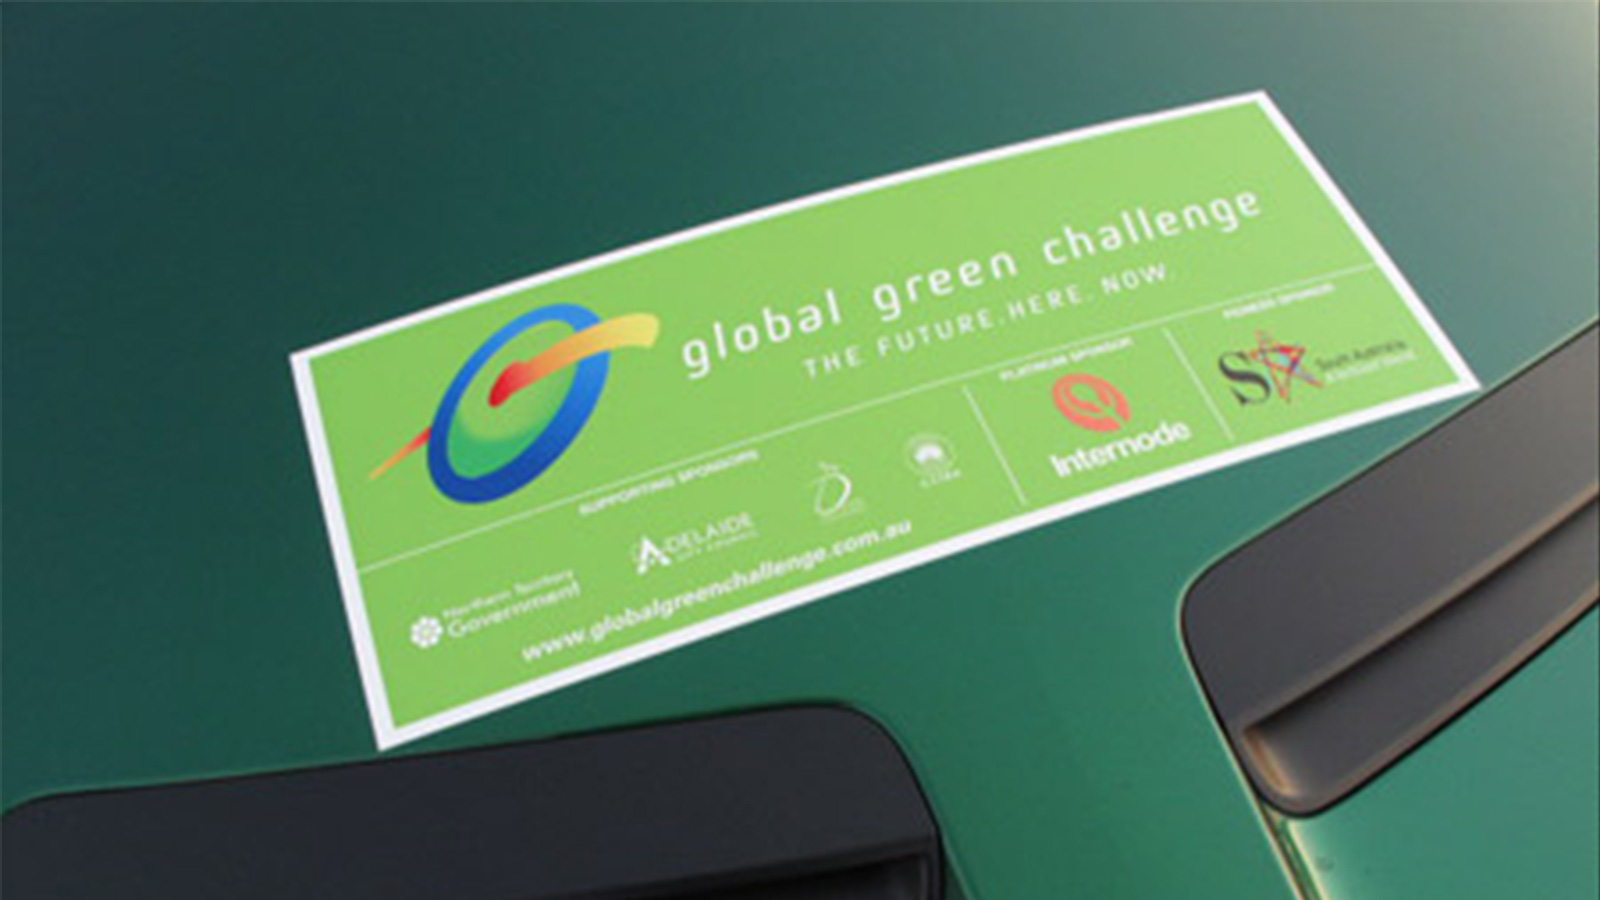 Global Green Challenge Update - Saturday October 24